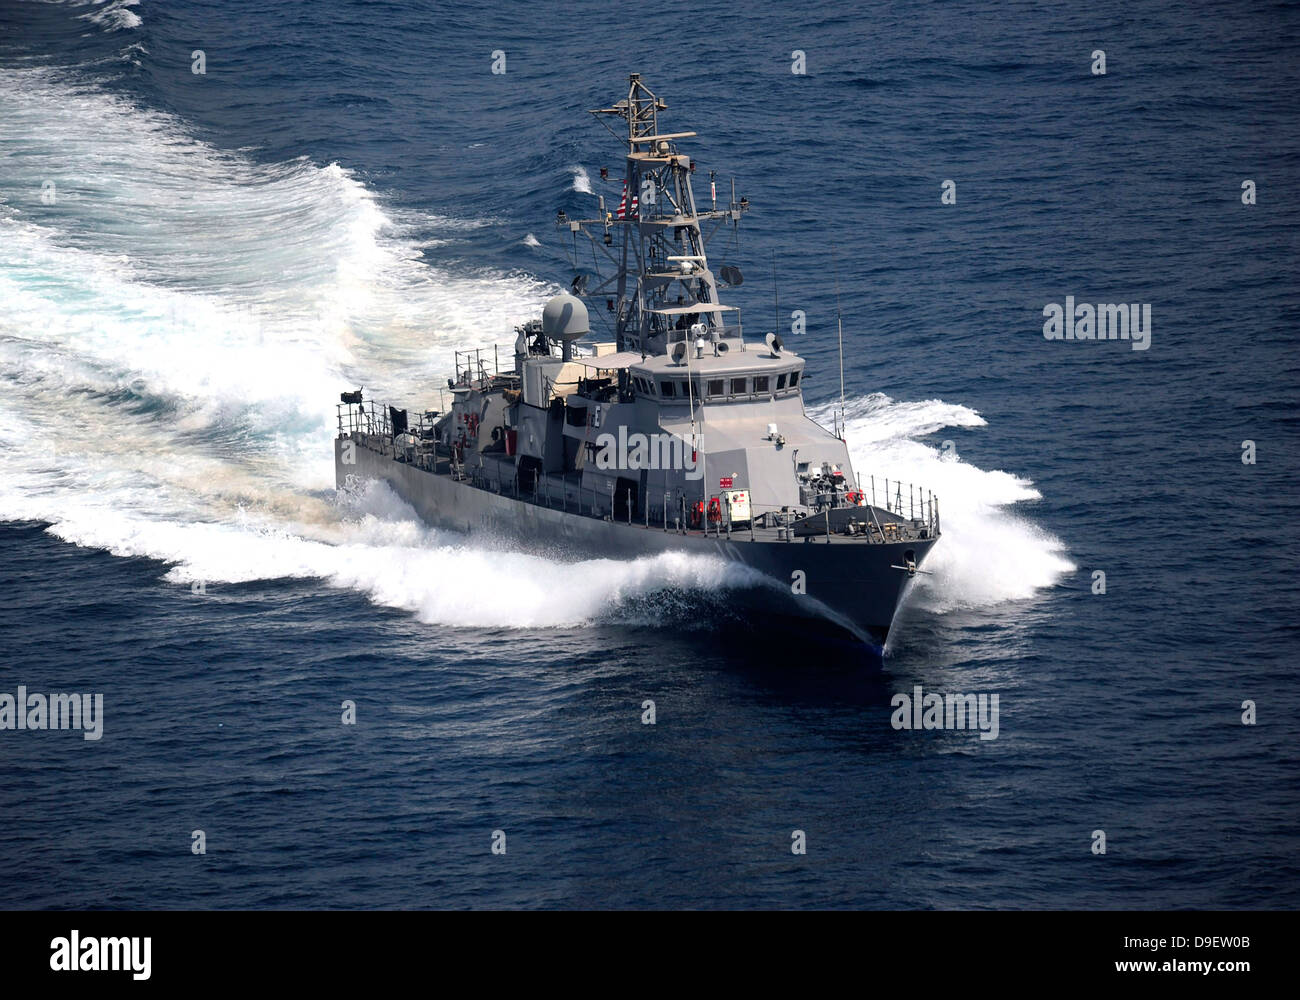 Le cyclone-classe des patrouilles côtières, le USS Firebolt transits dans le golfe Arabe. Banque D'Images